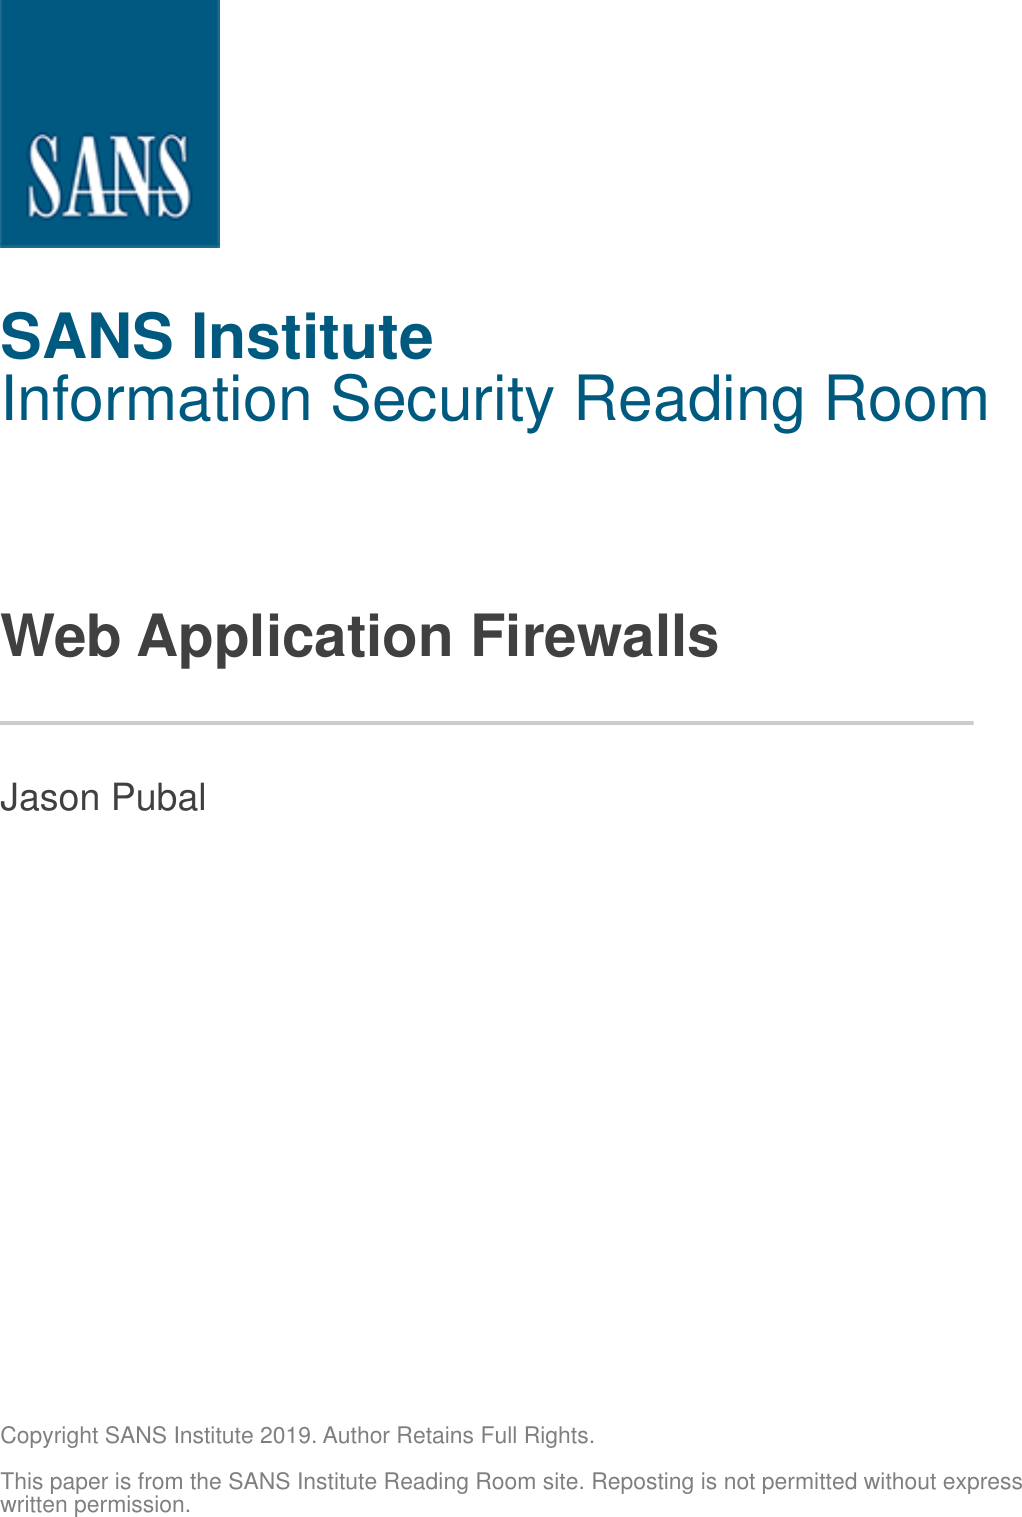 Web Application Firewalls Sans Guide Waf Evasion Ing